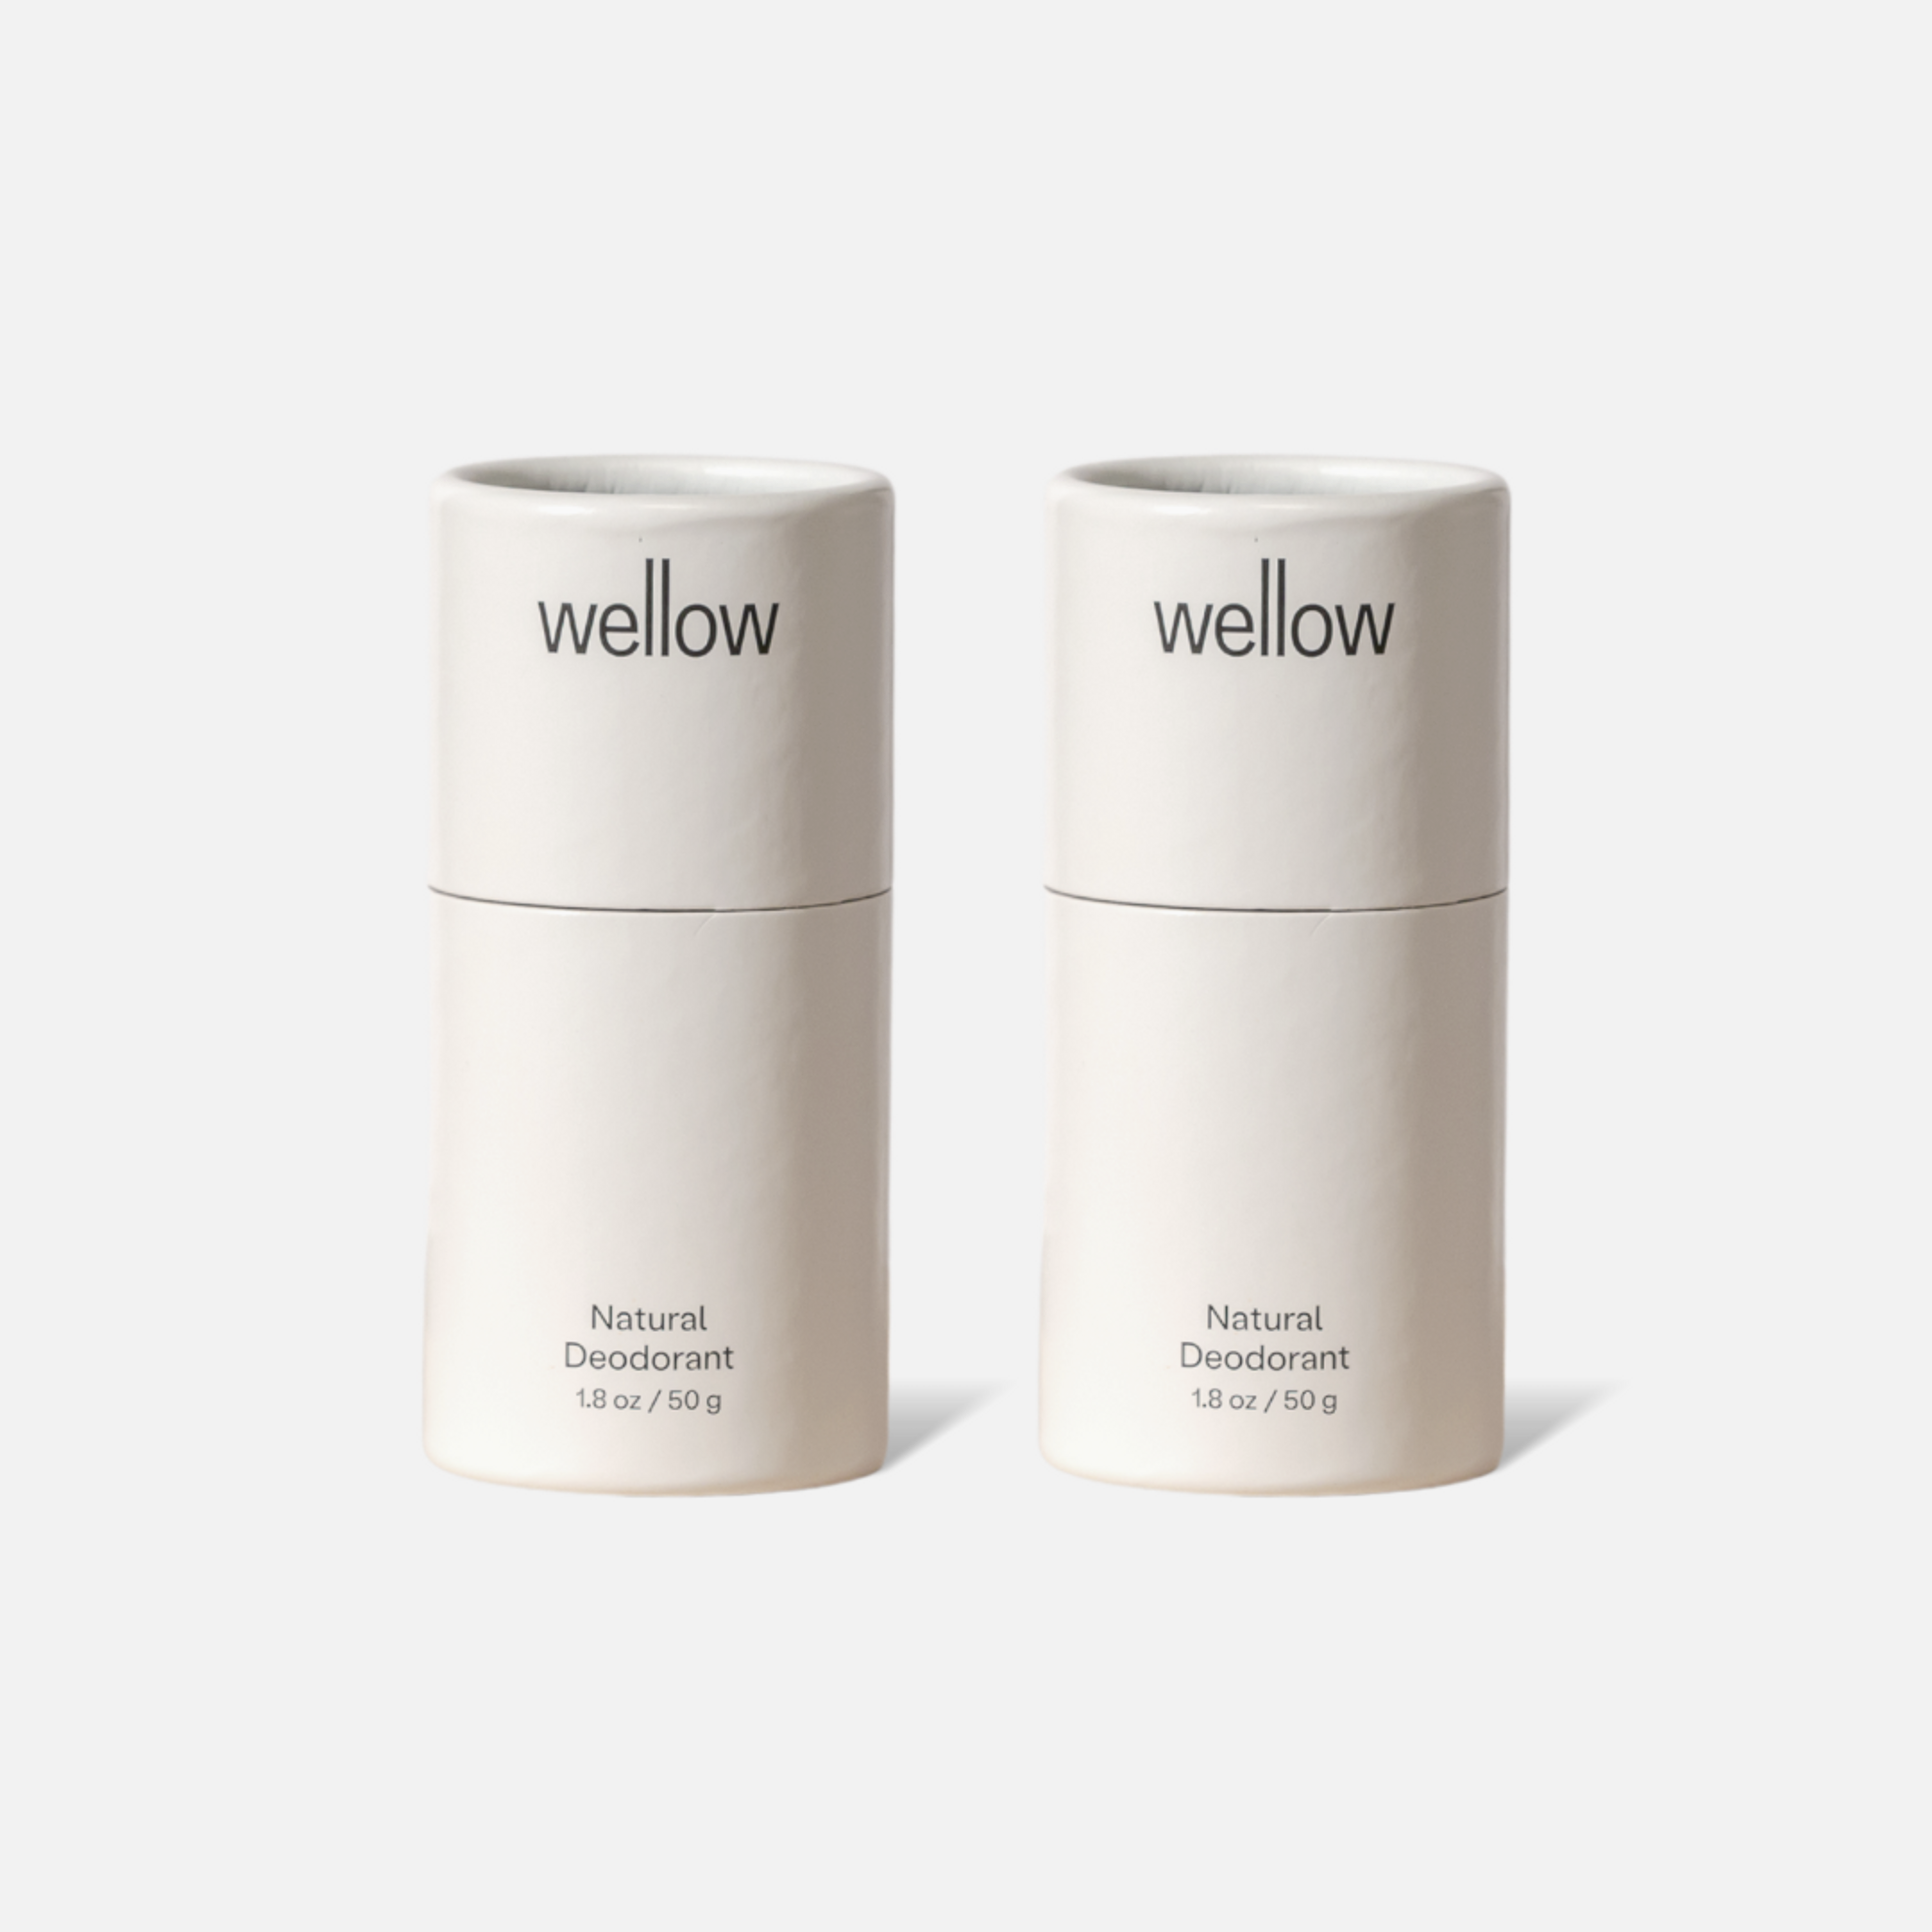 Wellow Deodorant (Goldune)